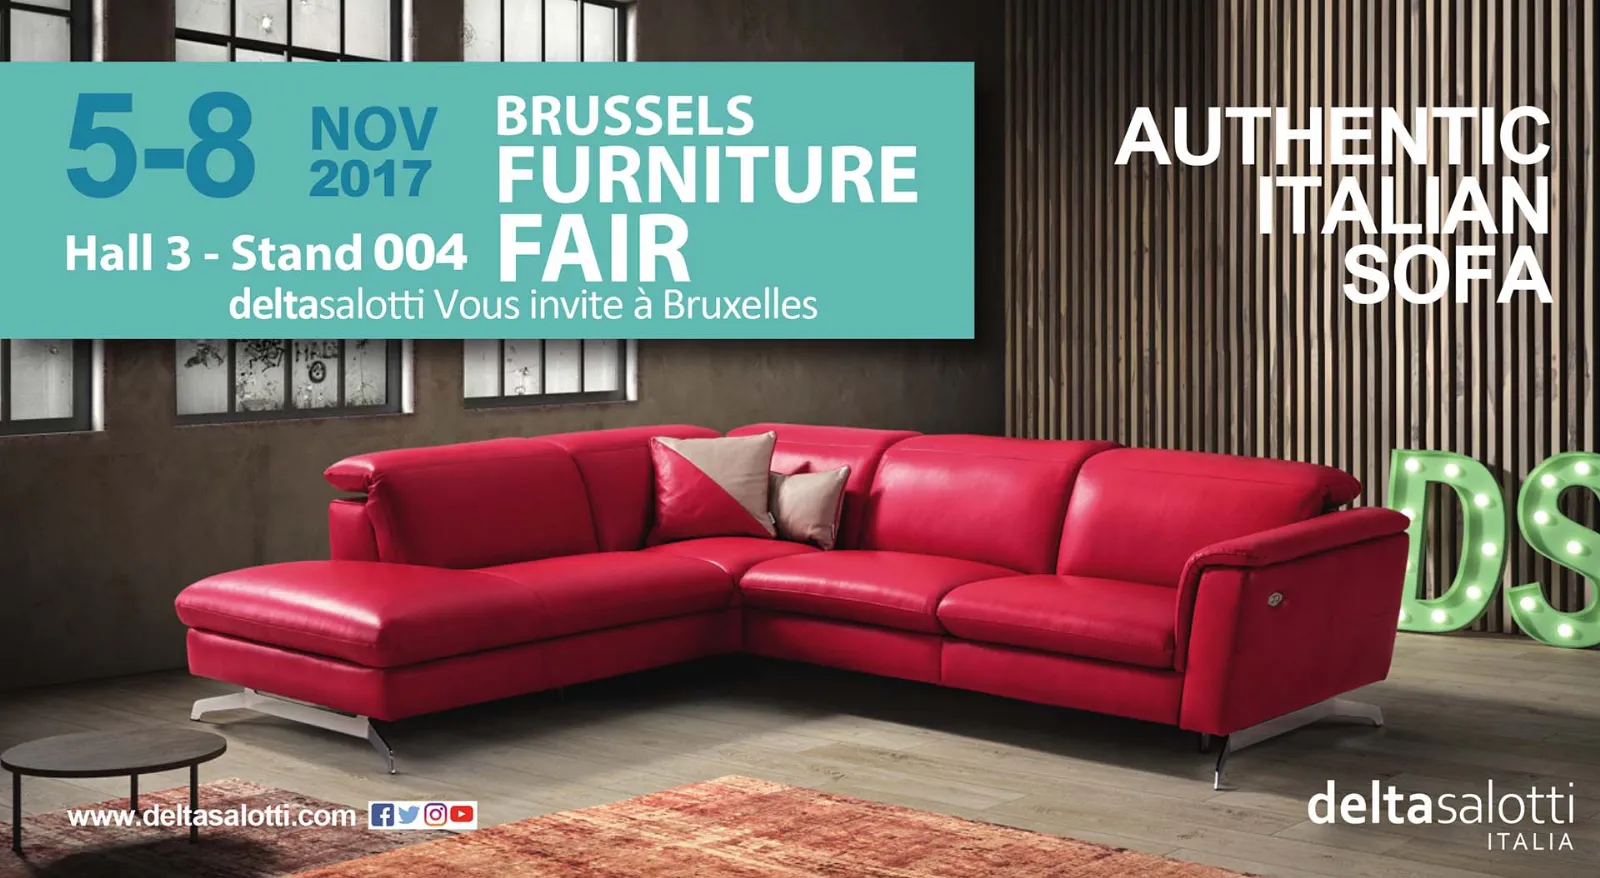 Brussels furniture fair 2017